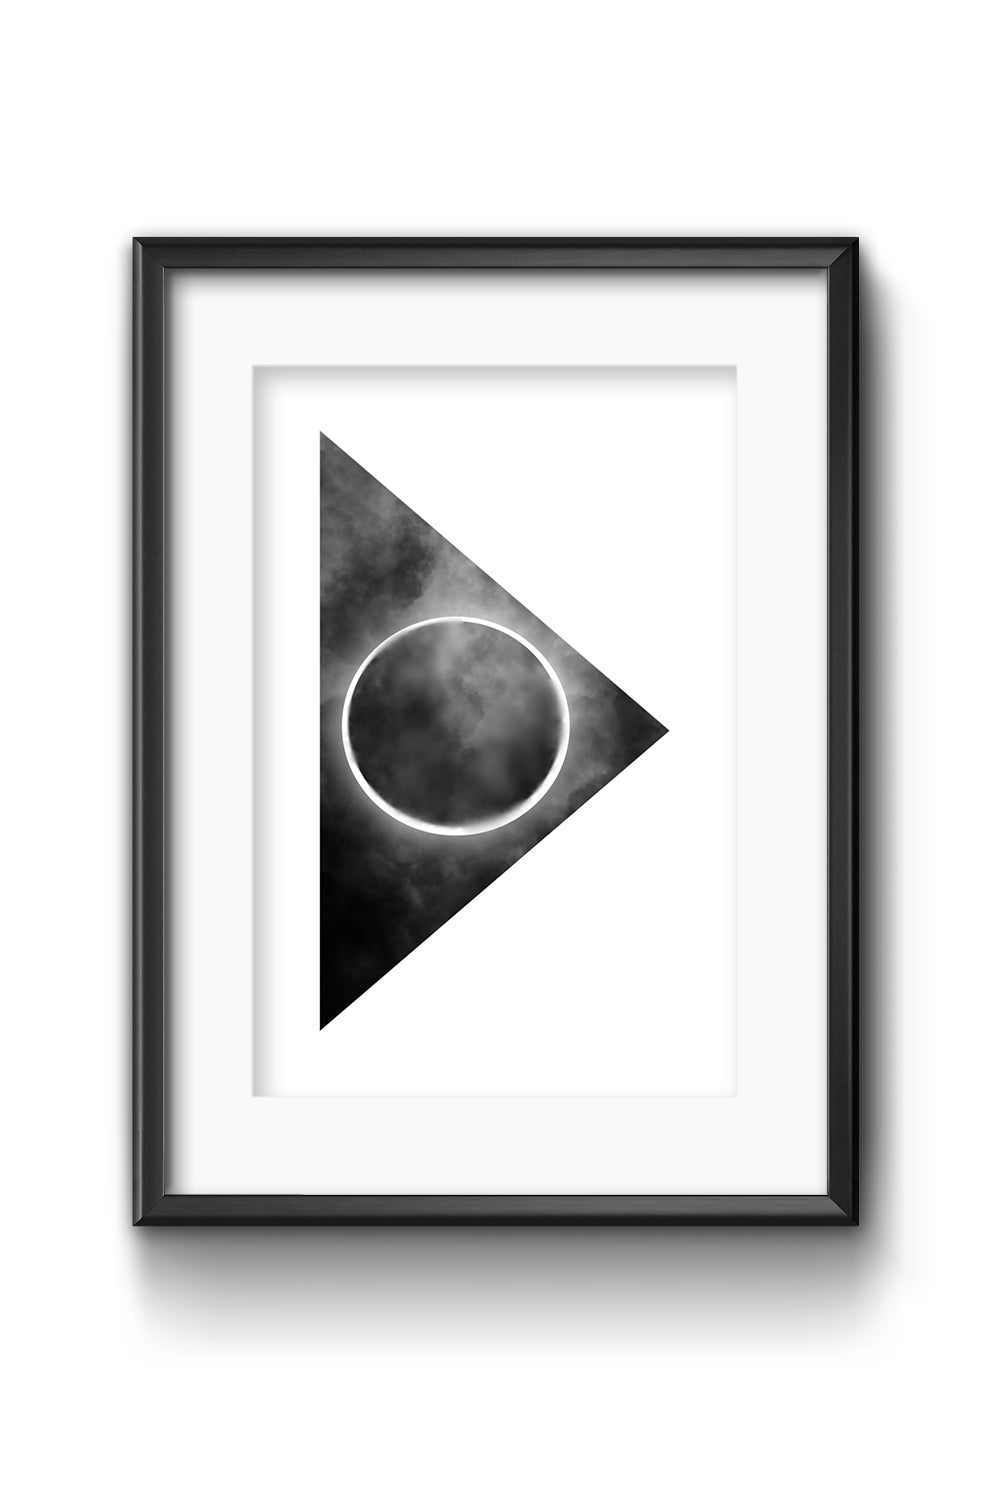 plakat księżyc grafika artystyczna polska urządzanie domu home decor